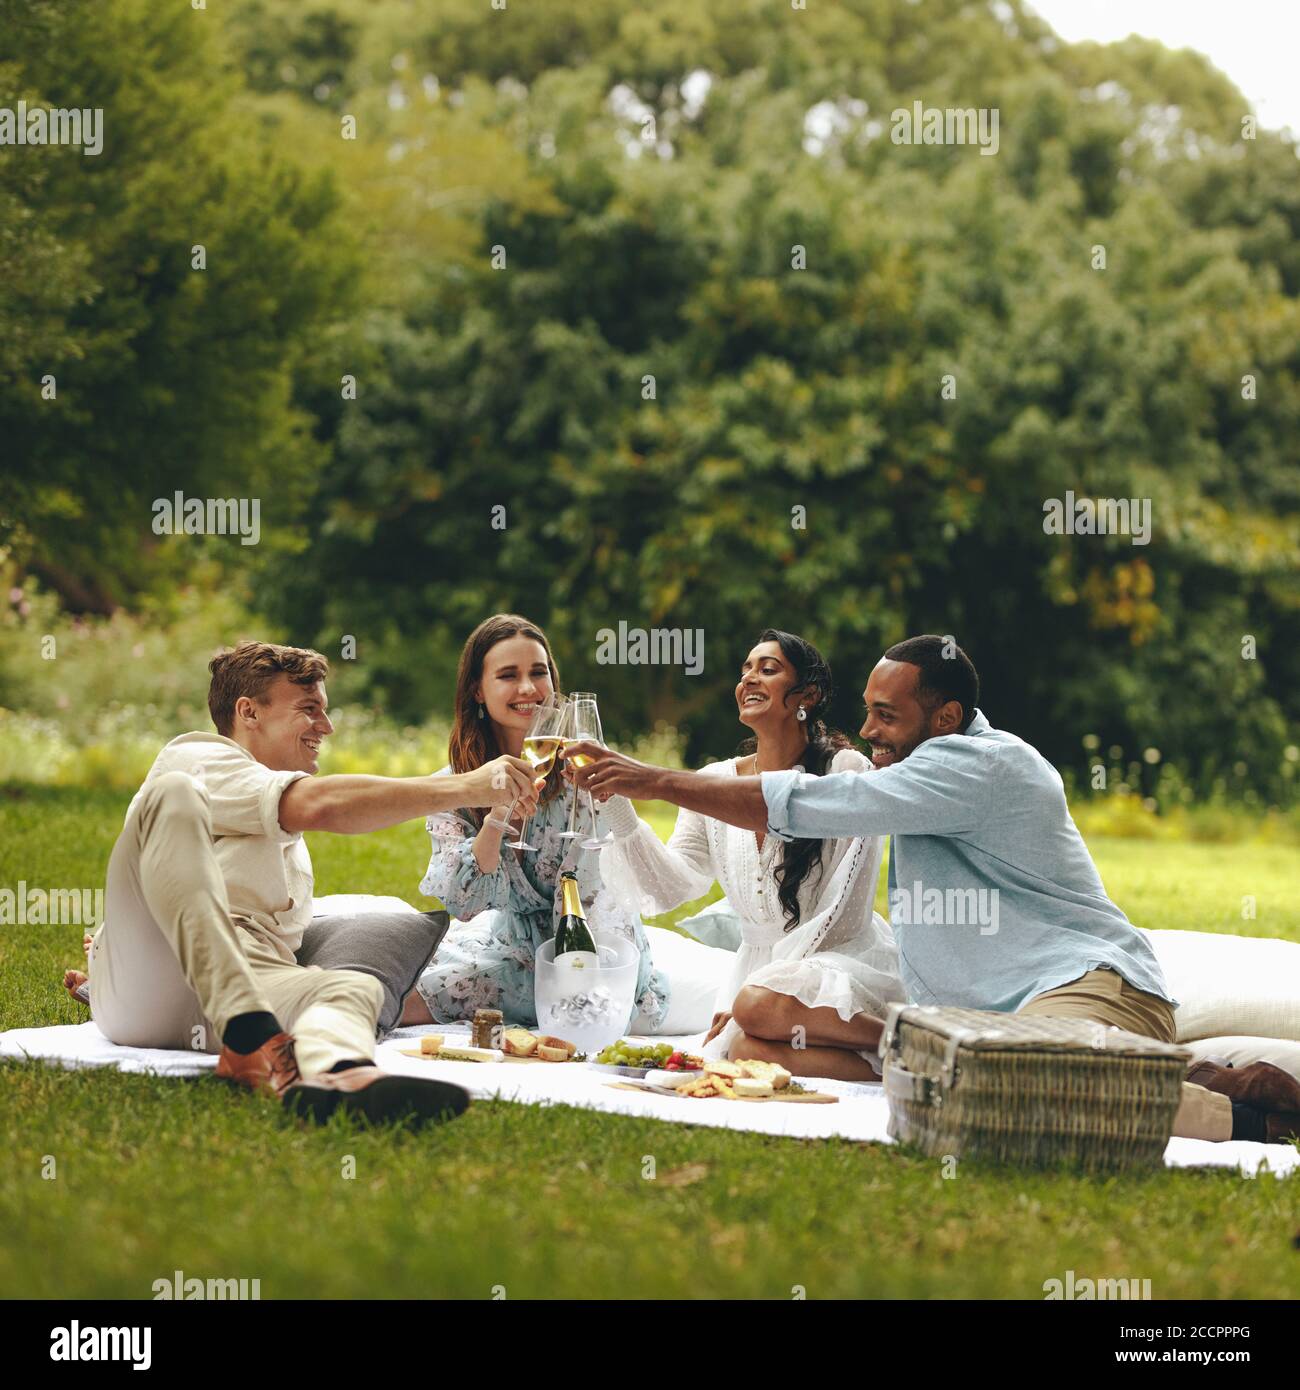 Les jeunes toaster le champagne pendant un pique-nique. Jeune groupe d'amis assis au parc et ayant du champagne. Banque D'Images